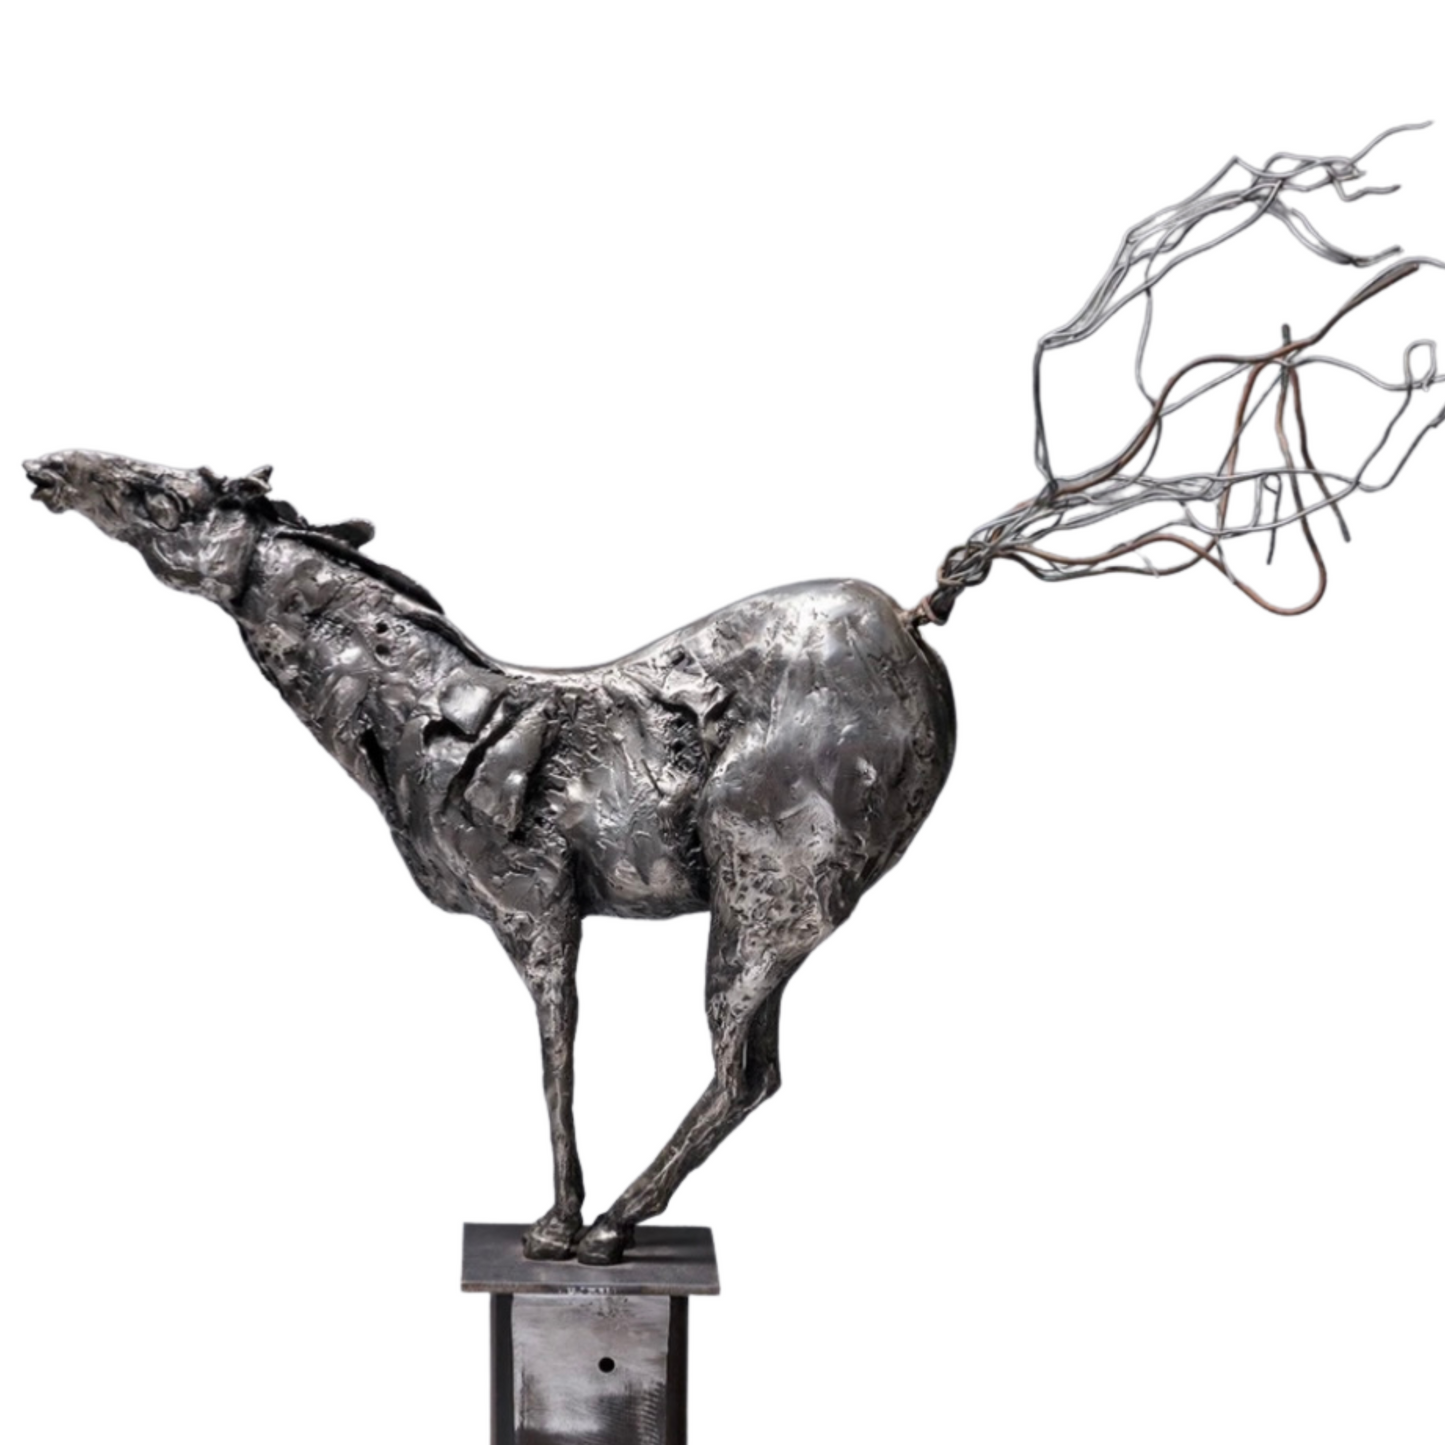 "Horselaugh" by Debbie Korbel